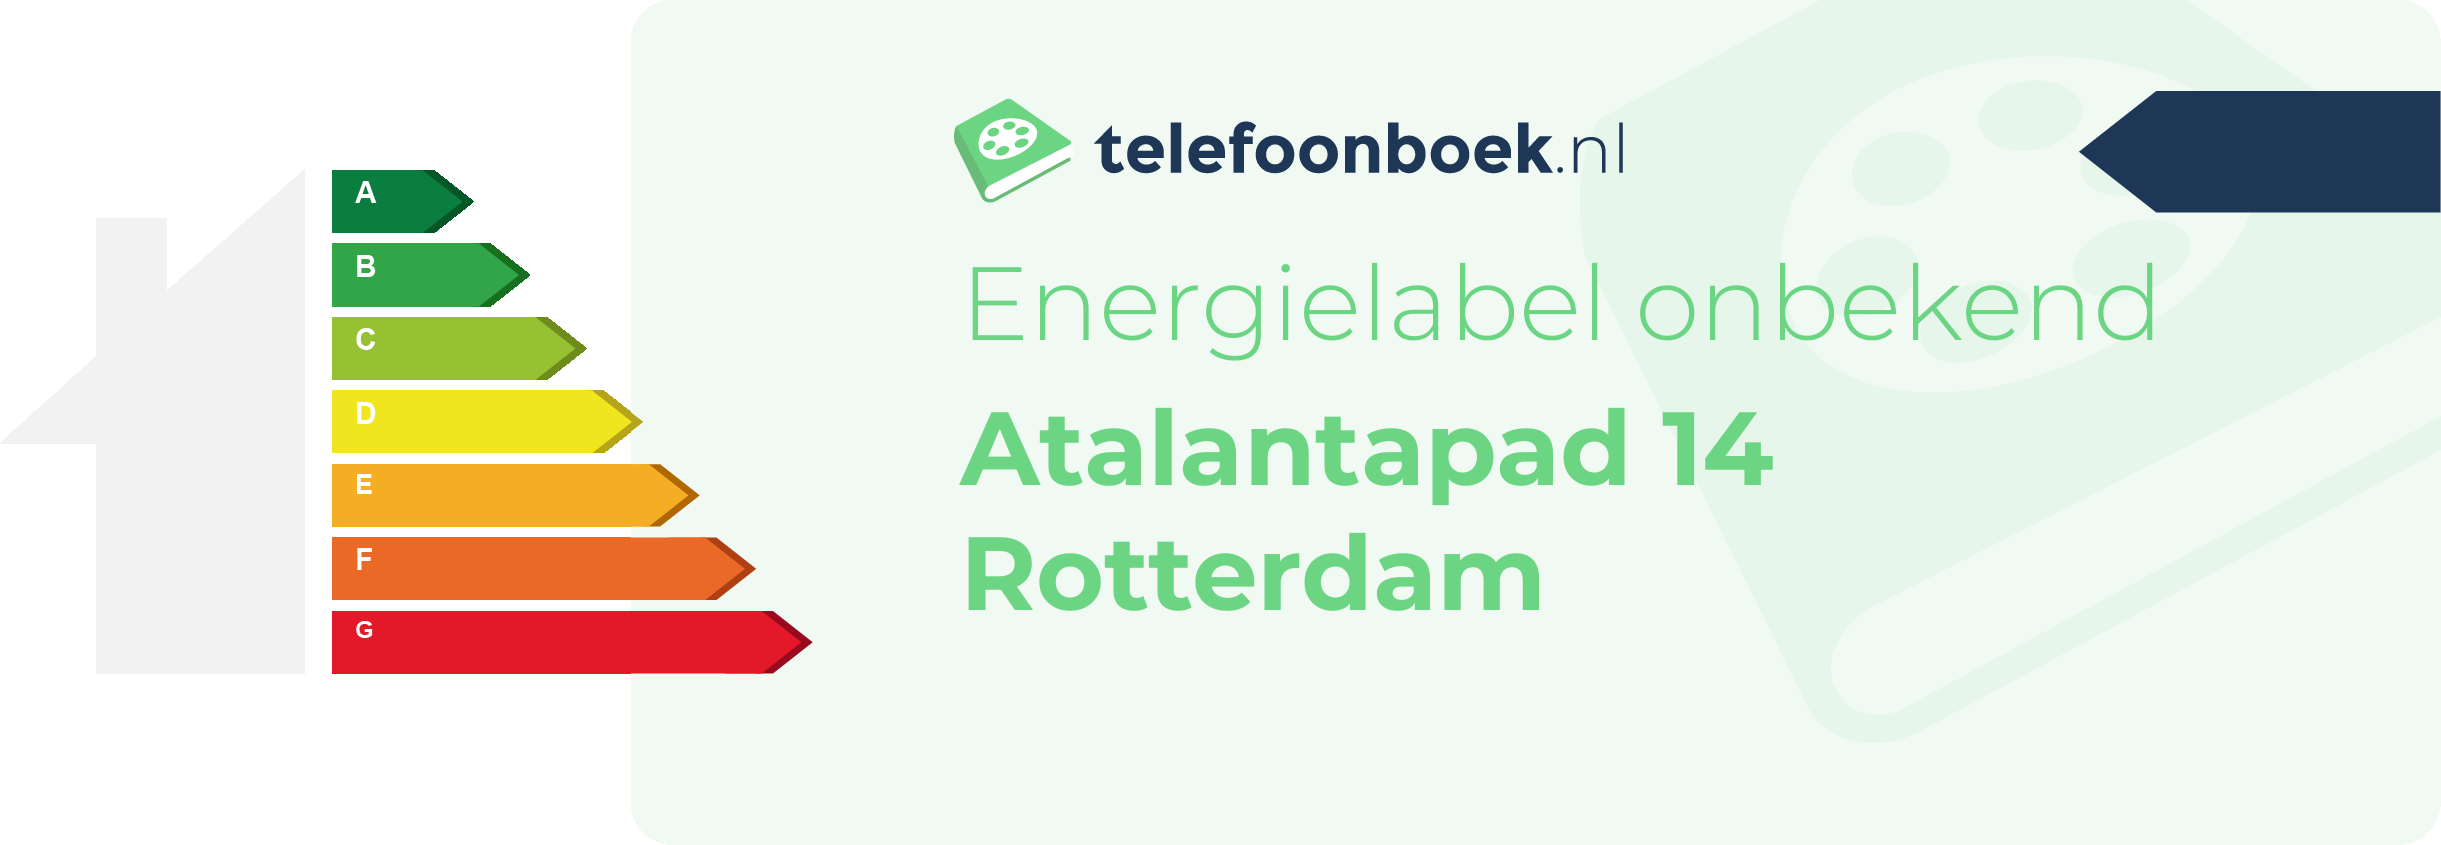 Energielabel Atalantapad 14 Rotterdam